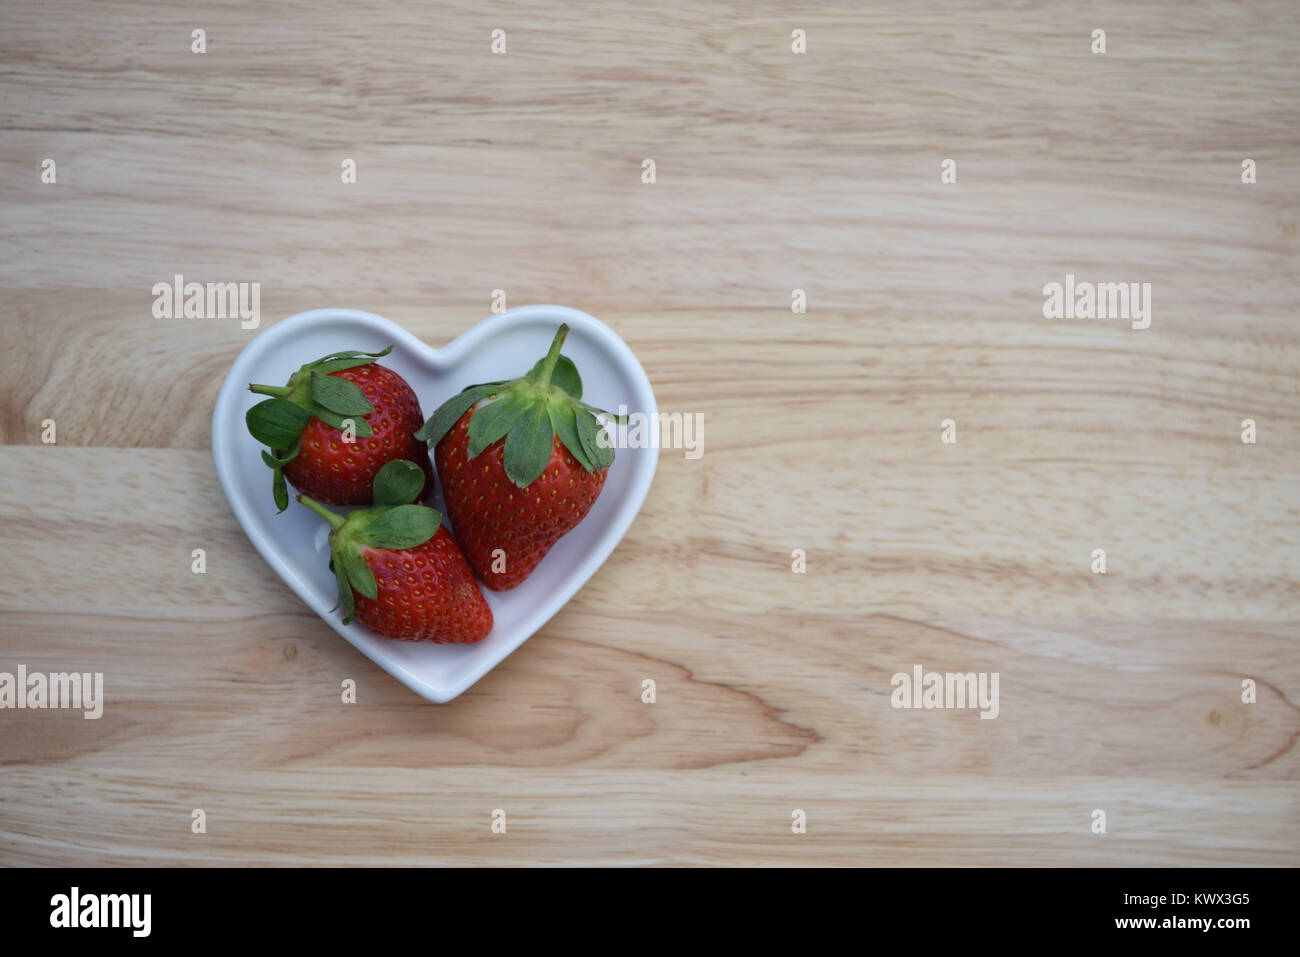 Photographie image alimentaire des fruits frais avec trois rouges fraises avec feuille verte haut placé dans un plat en forme de coeur amour blanc sur fond de bois Banque D'Images